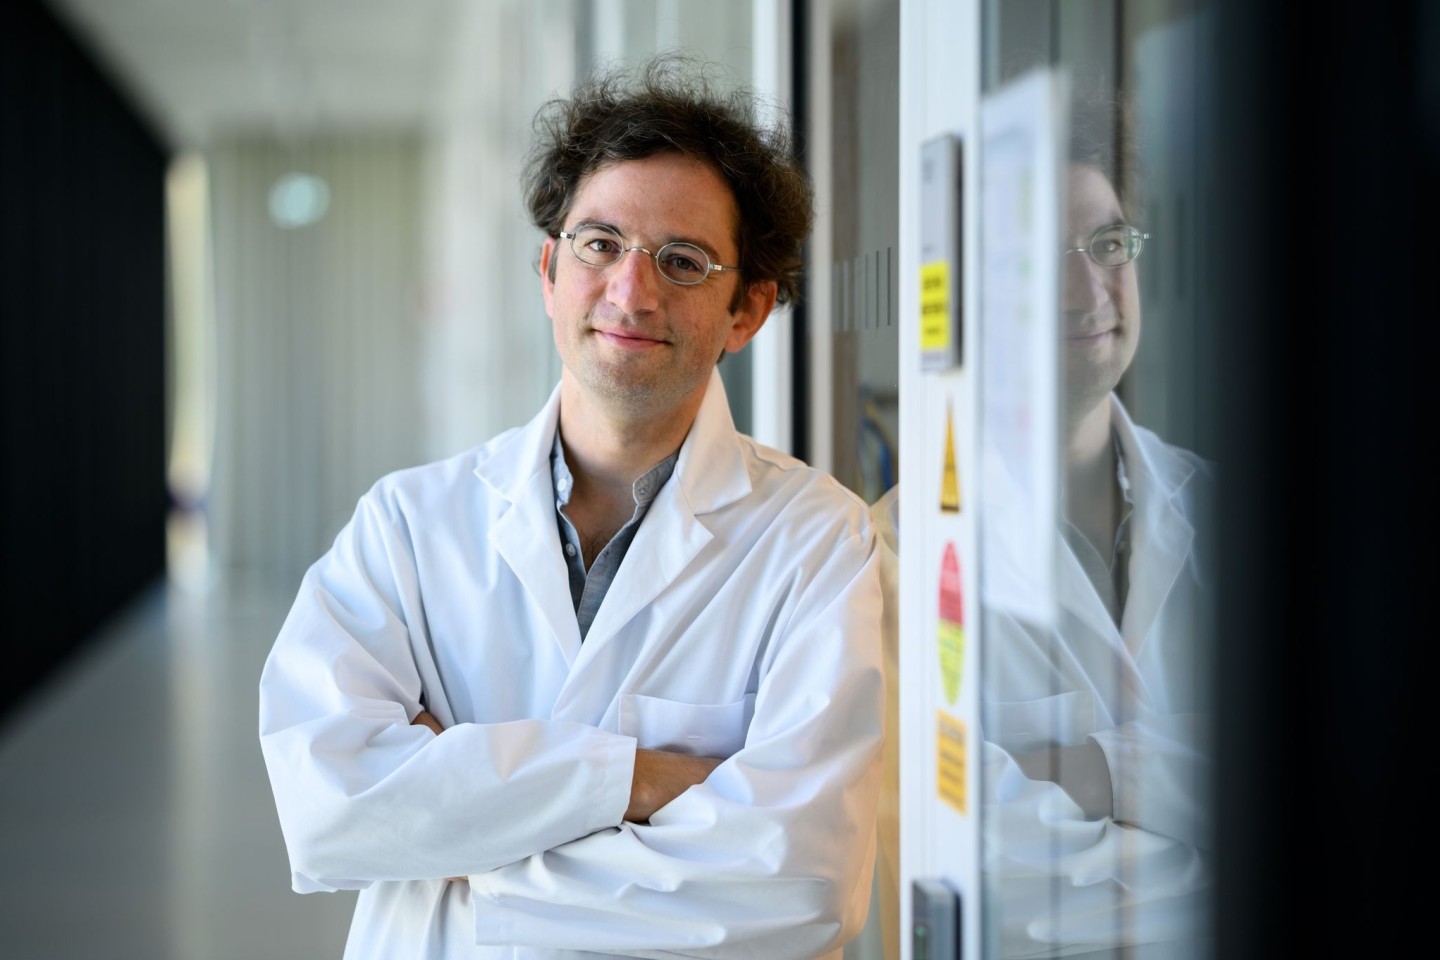 Molekularbiologe Emanuel Wyler steht vor dem Sicherheits-Labor vom Max-Delbrück-Centrum für molekulare Medizin in Berlin.